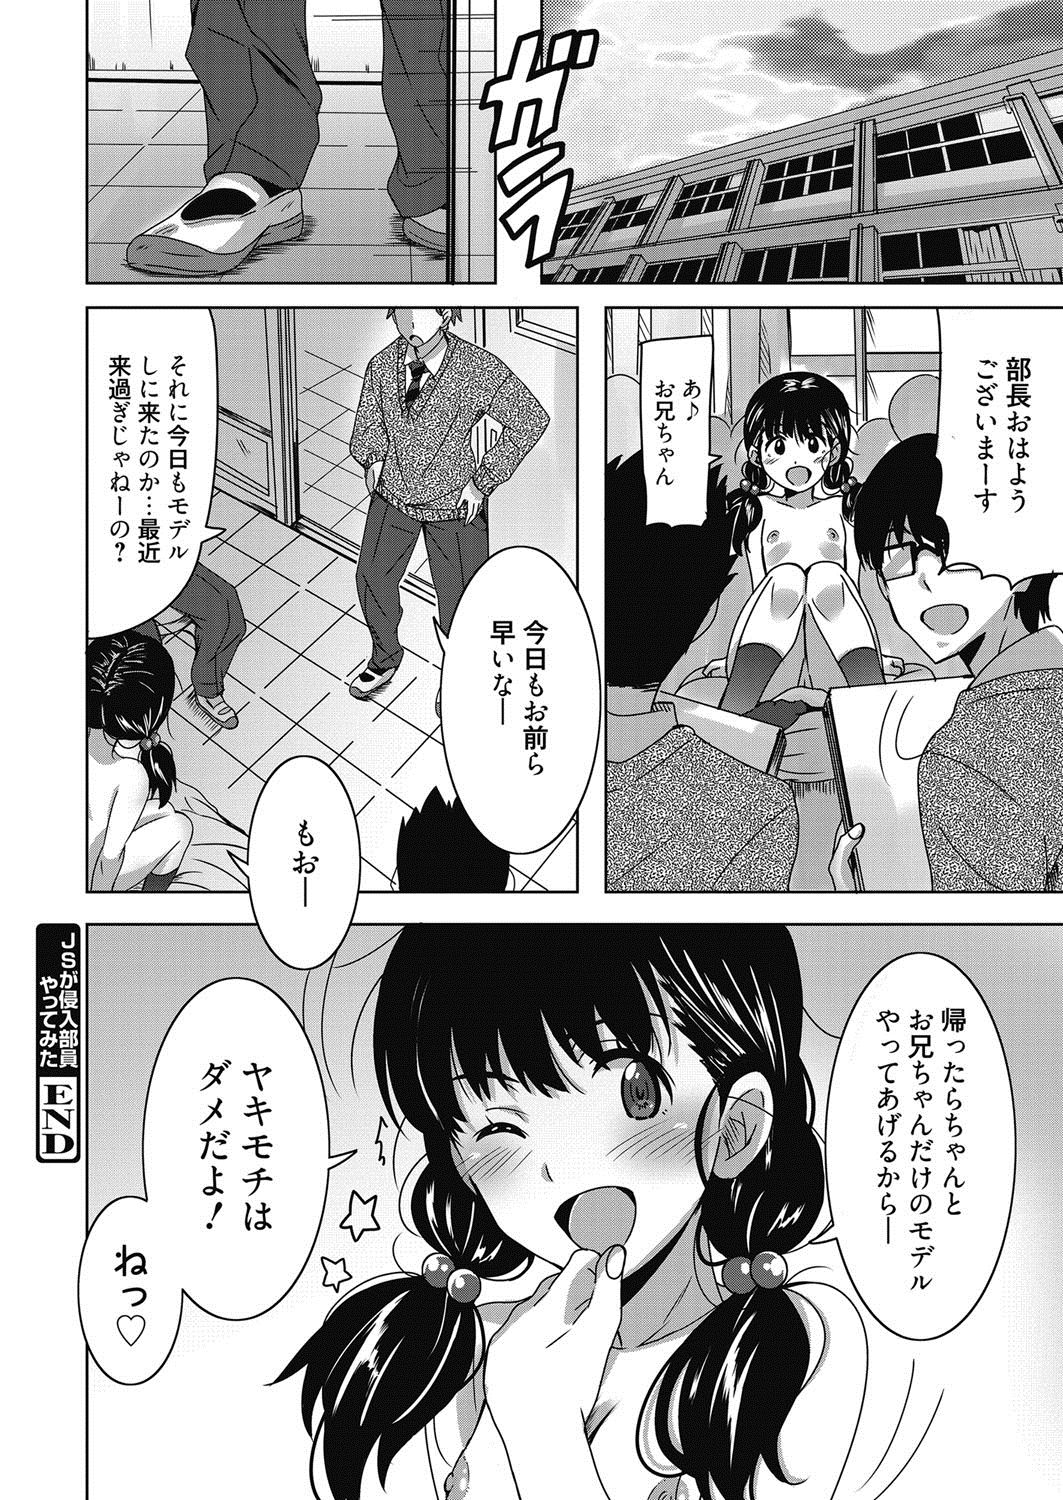 web 漫画ばんがいち Vol.21